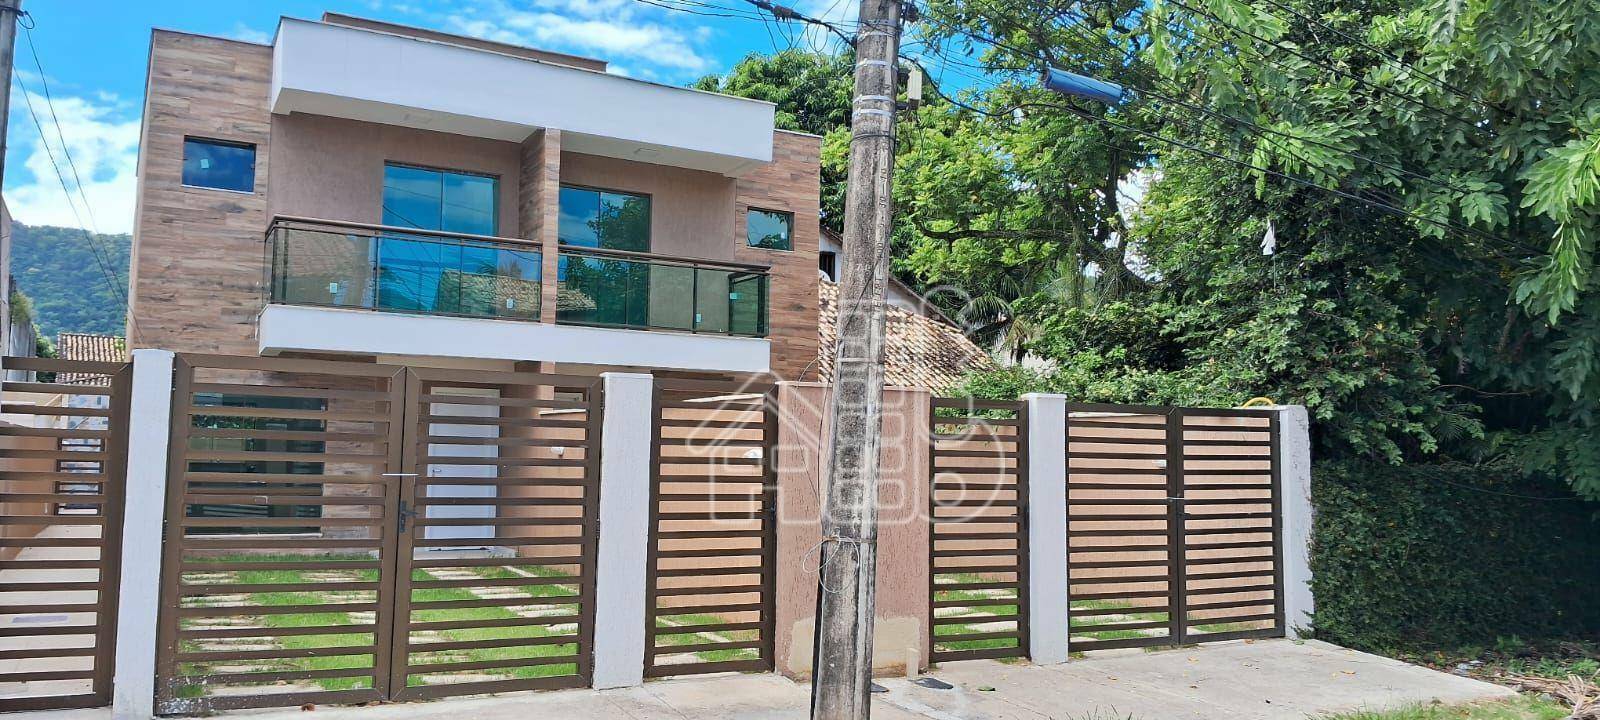 Casa com 3 dormitórios à venda, 100 m² por R$ 545.000,00 - Itaipu - Niterói/RJ